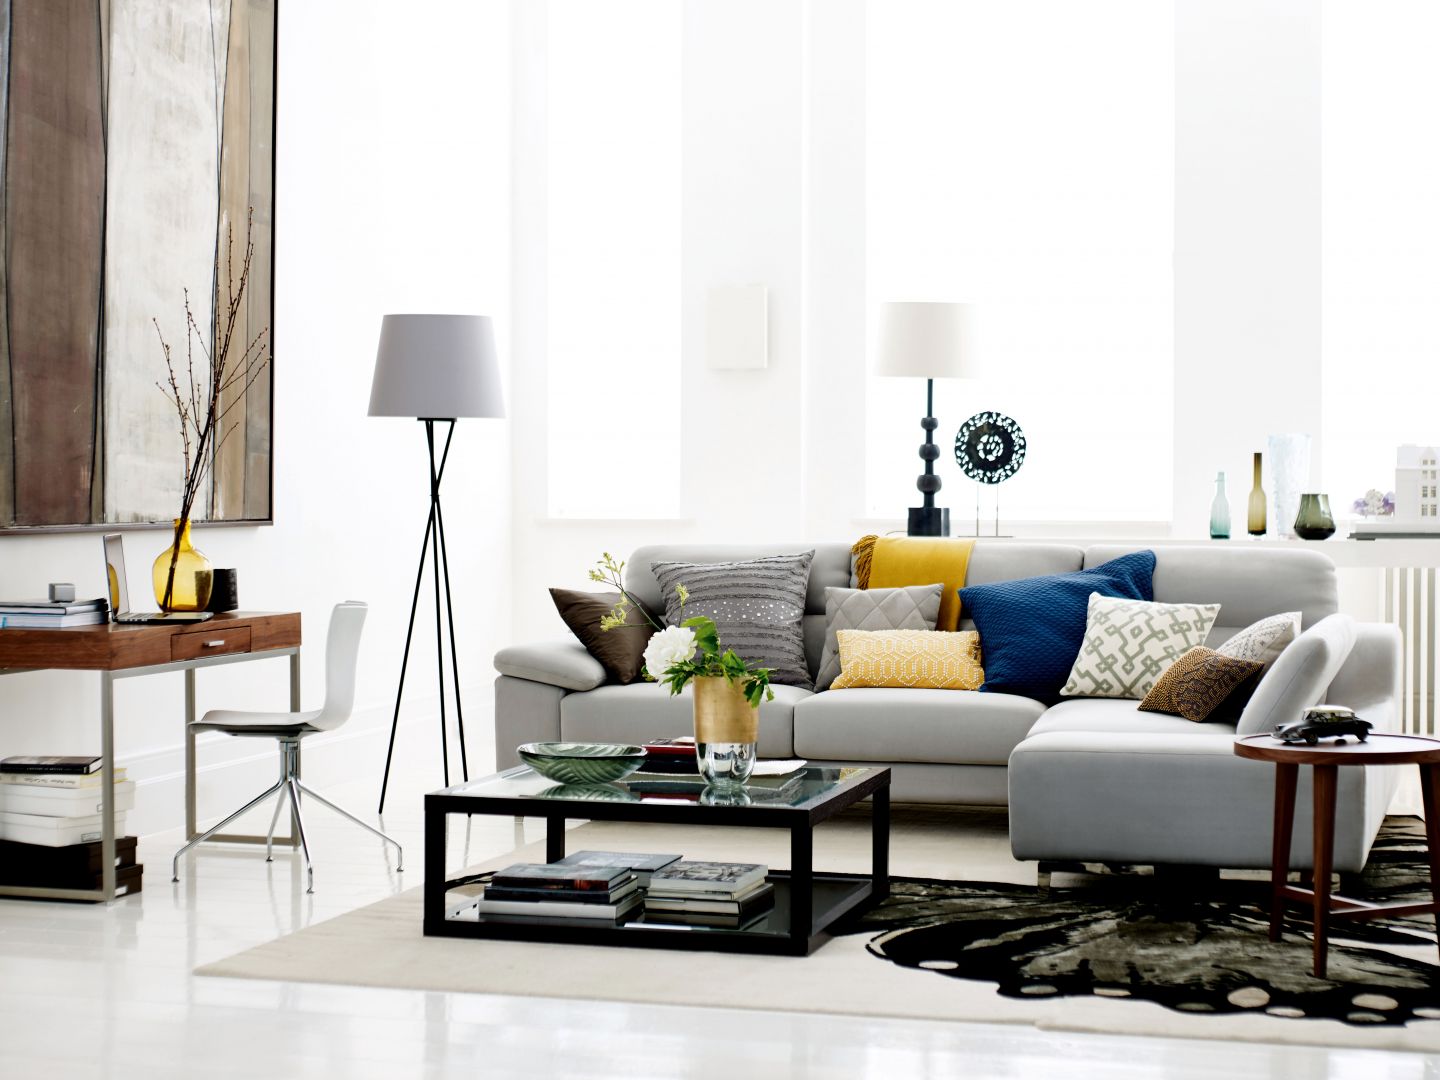 Stoliki na metalowej podstawie, ze szklanym blatem idealnie uzuzpełnią nowoczesny salon. Fot. DFS Furniture